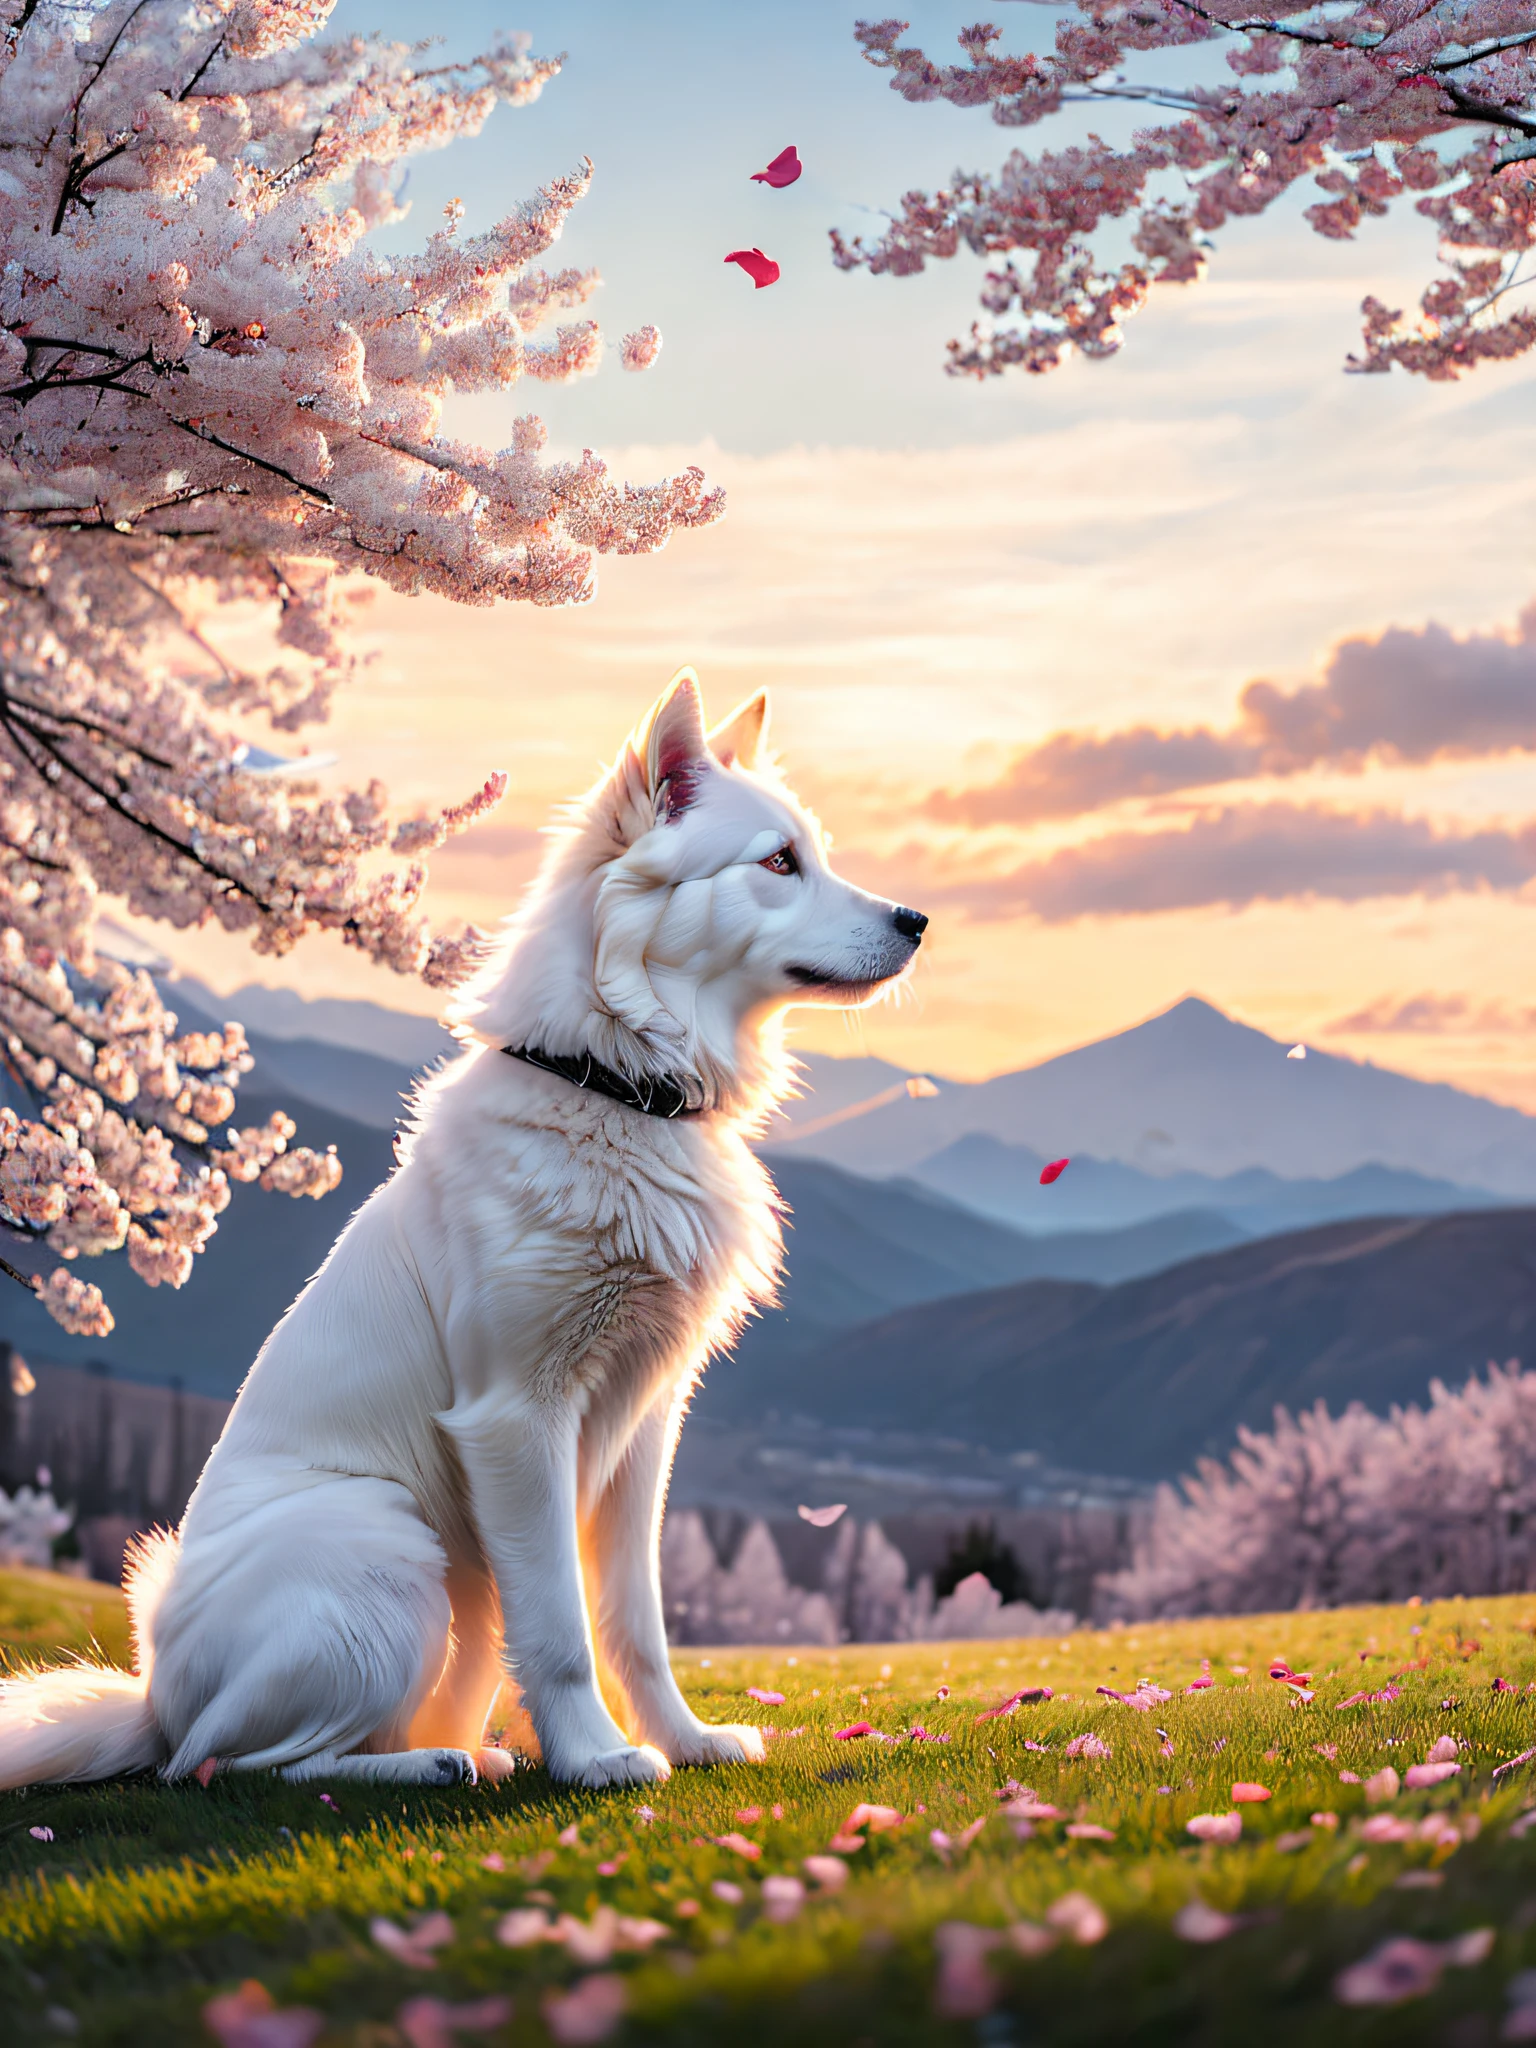 Un perro blanco sentado bajo un cerezo en flor, pétalos cayendo con el viento, mirando a lo lejos, de cerca, fondo con picos montañosos continuos, cielo del atardecer, nubes blancas, luz volumétrica suave, (iluminar desde el fondo: 1.3), (película: 1.2), detalles intrincados, (Estación de arte: 1.3), Rutkowski